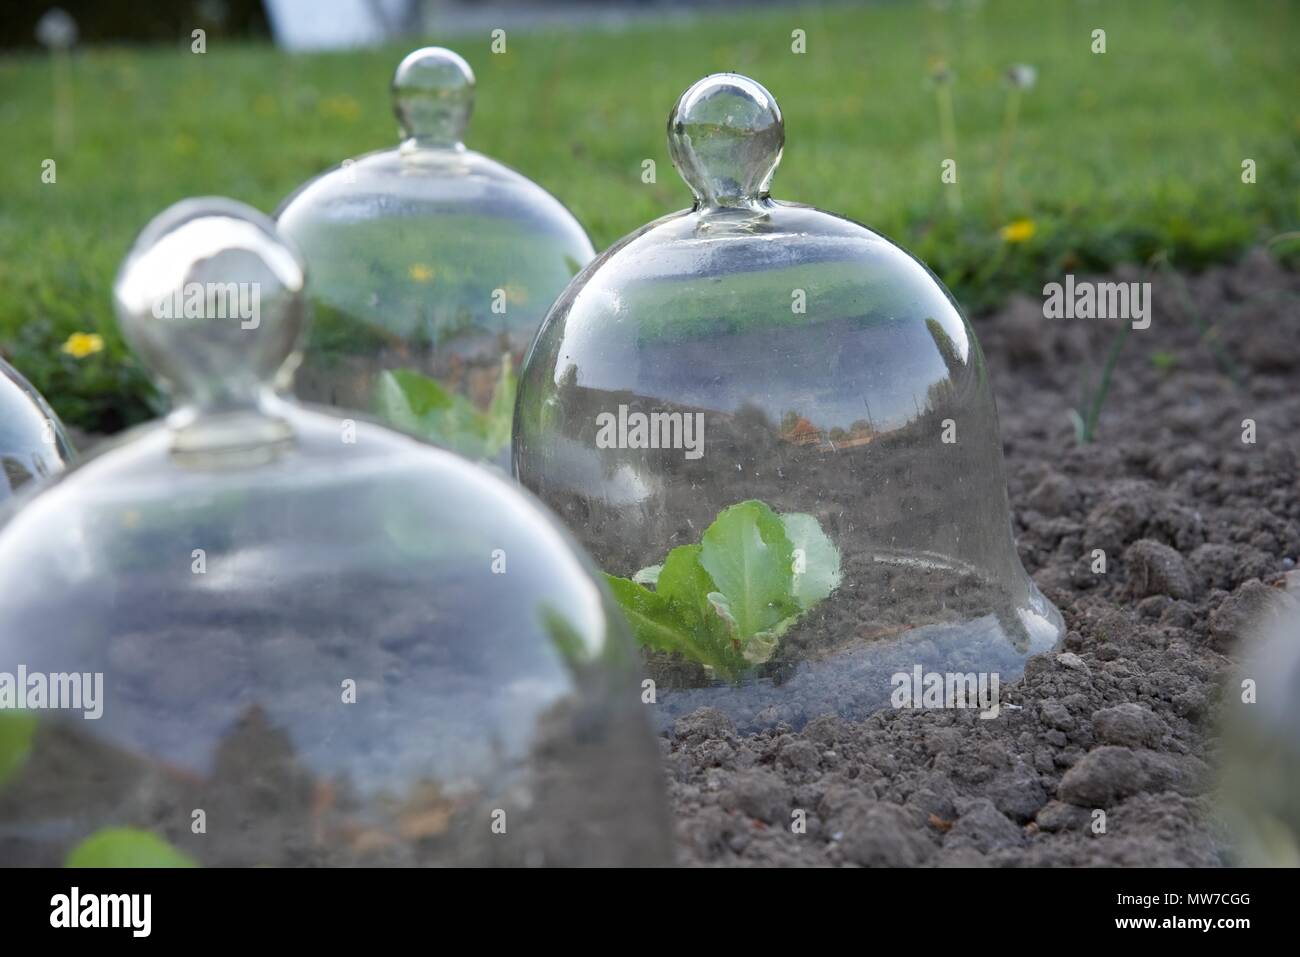 Cloches du jardinier : cloches de verre traditionnelle, ou des cloches, protéger les jeunes plants de laitue Banque D'Images